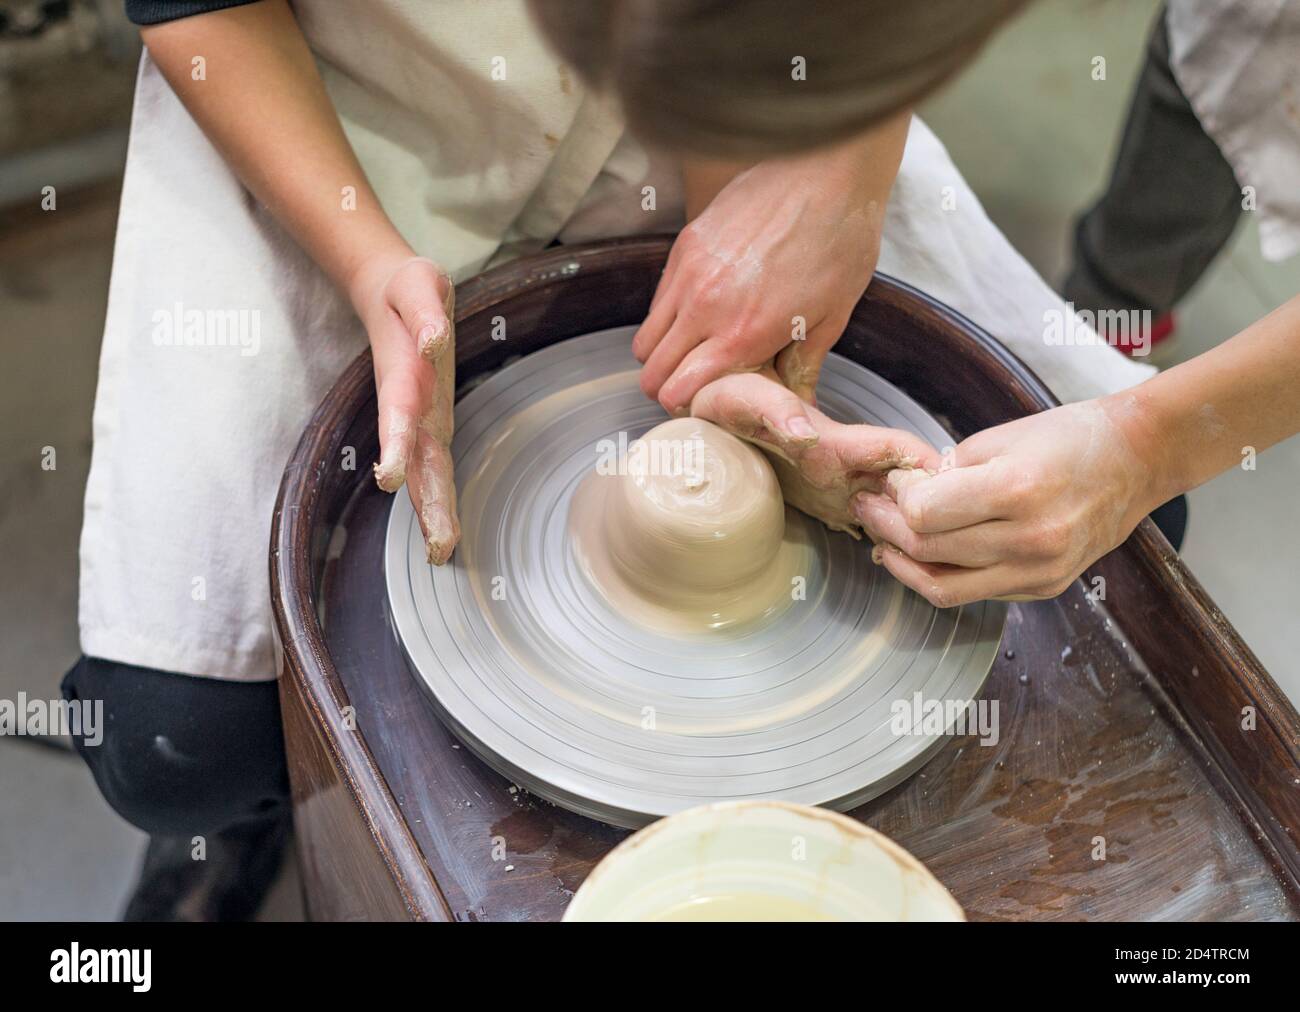 Un potier guide les mains d'un enfant pour l'aider à travailler avec la roue en céramique et l'argile. Gros plan de l'atelier. Apprentissage en cours. Banque D'Images